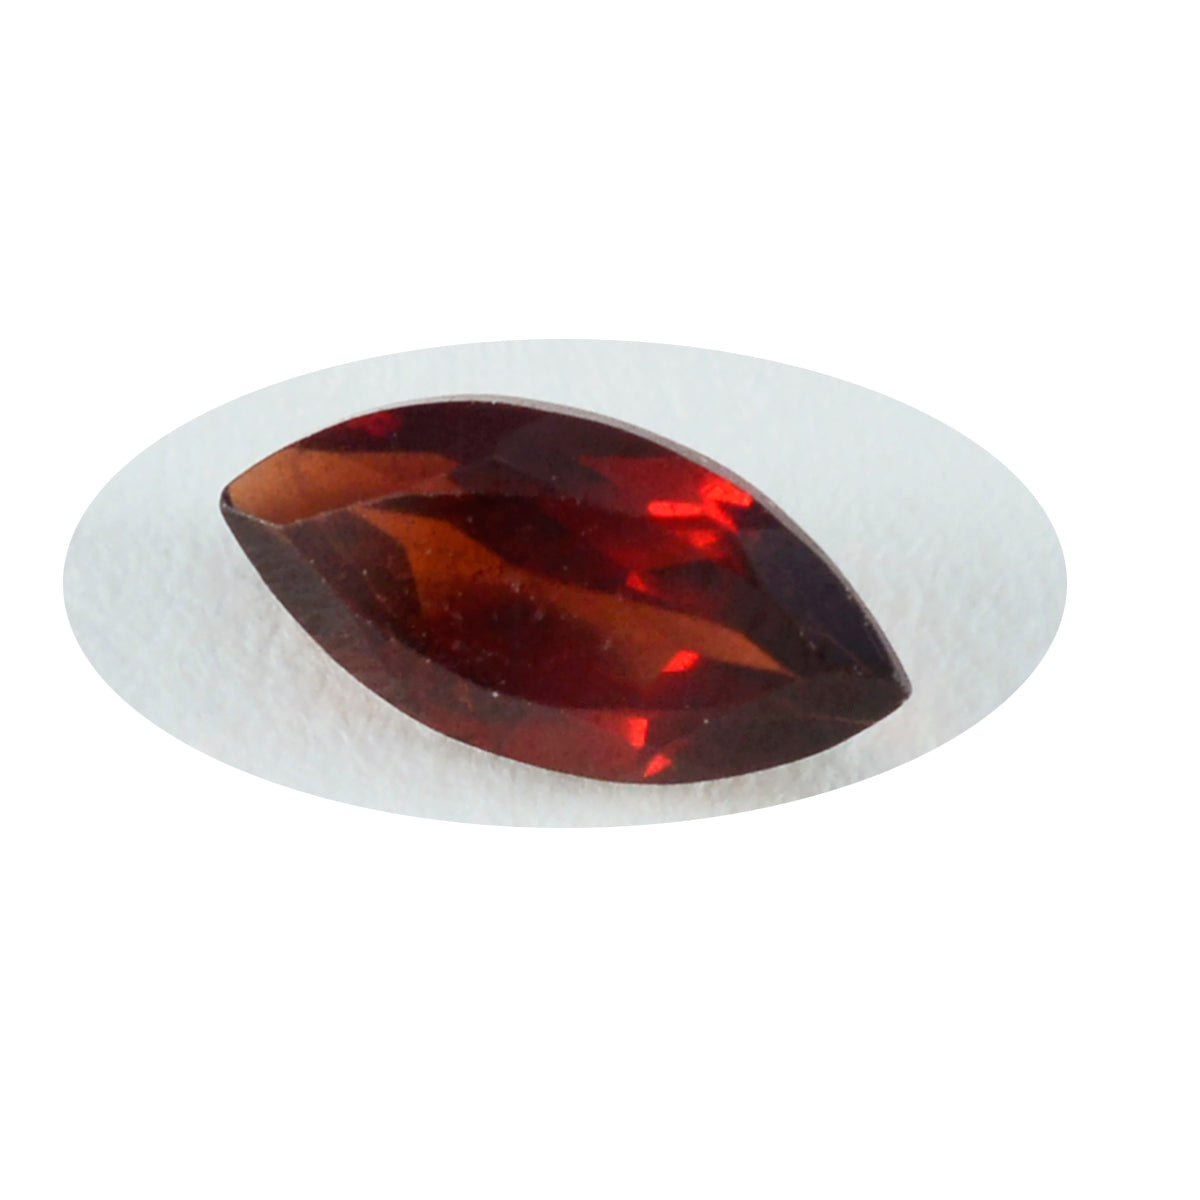 Riyogems 1 Stück natürlicher roter Granat, facettiert, 8 x 16 mm, Marquise-Form, süßer Qualitäts-Edelstein